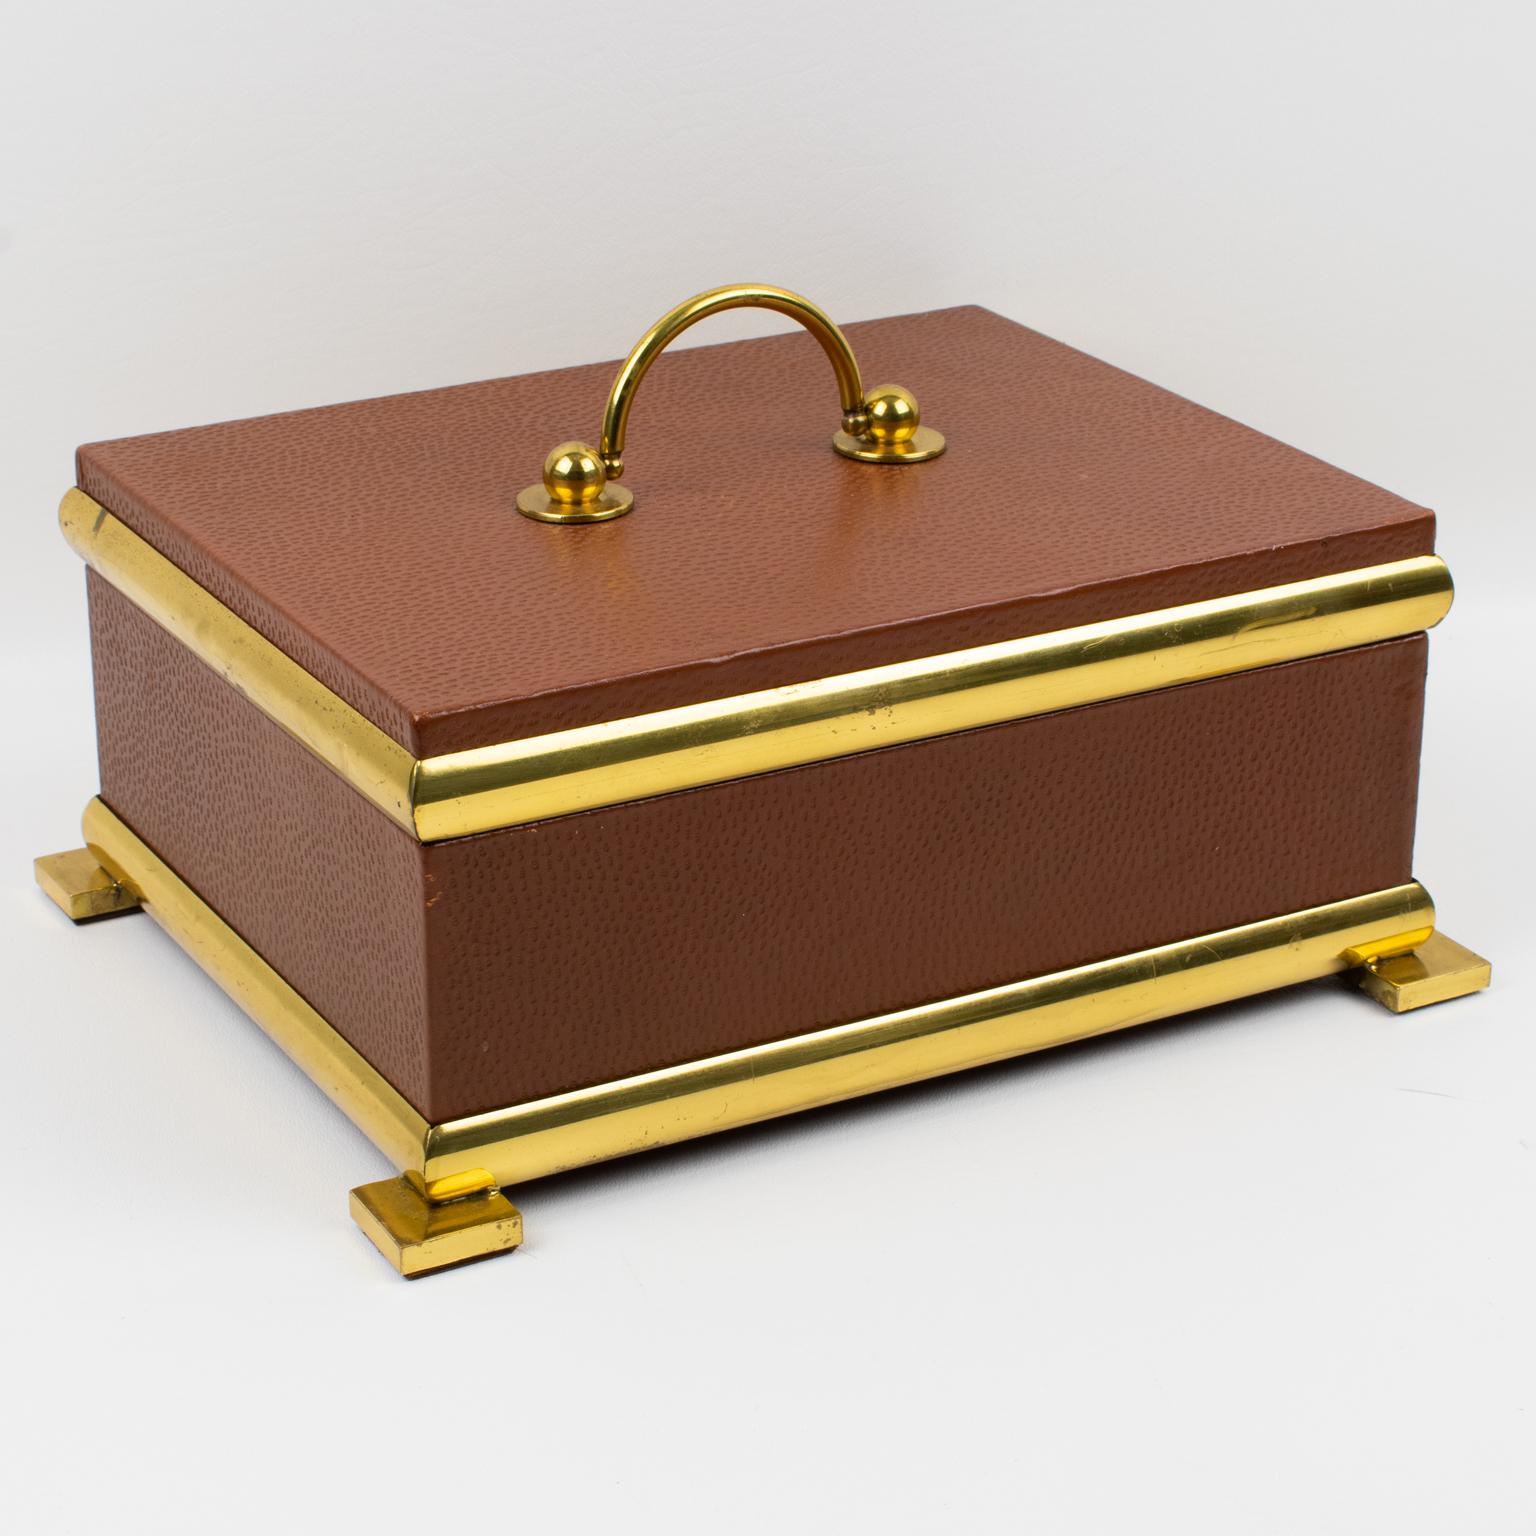 Cette élégante boîte à couvercle décorative italienne des années 1950 présente un style Empire. La forme rectangulaire haute arbore un design moderniste classique, avec un encadrement en métal laiton doré sur un corps en bois enveloppé de cuir brun